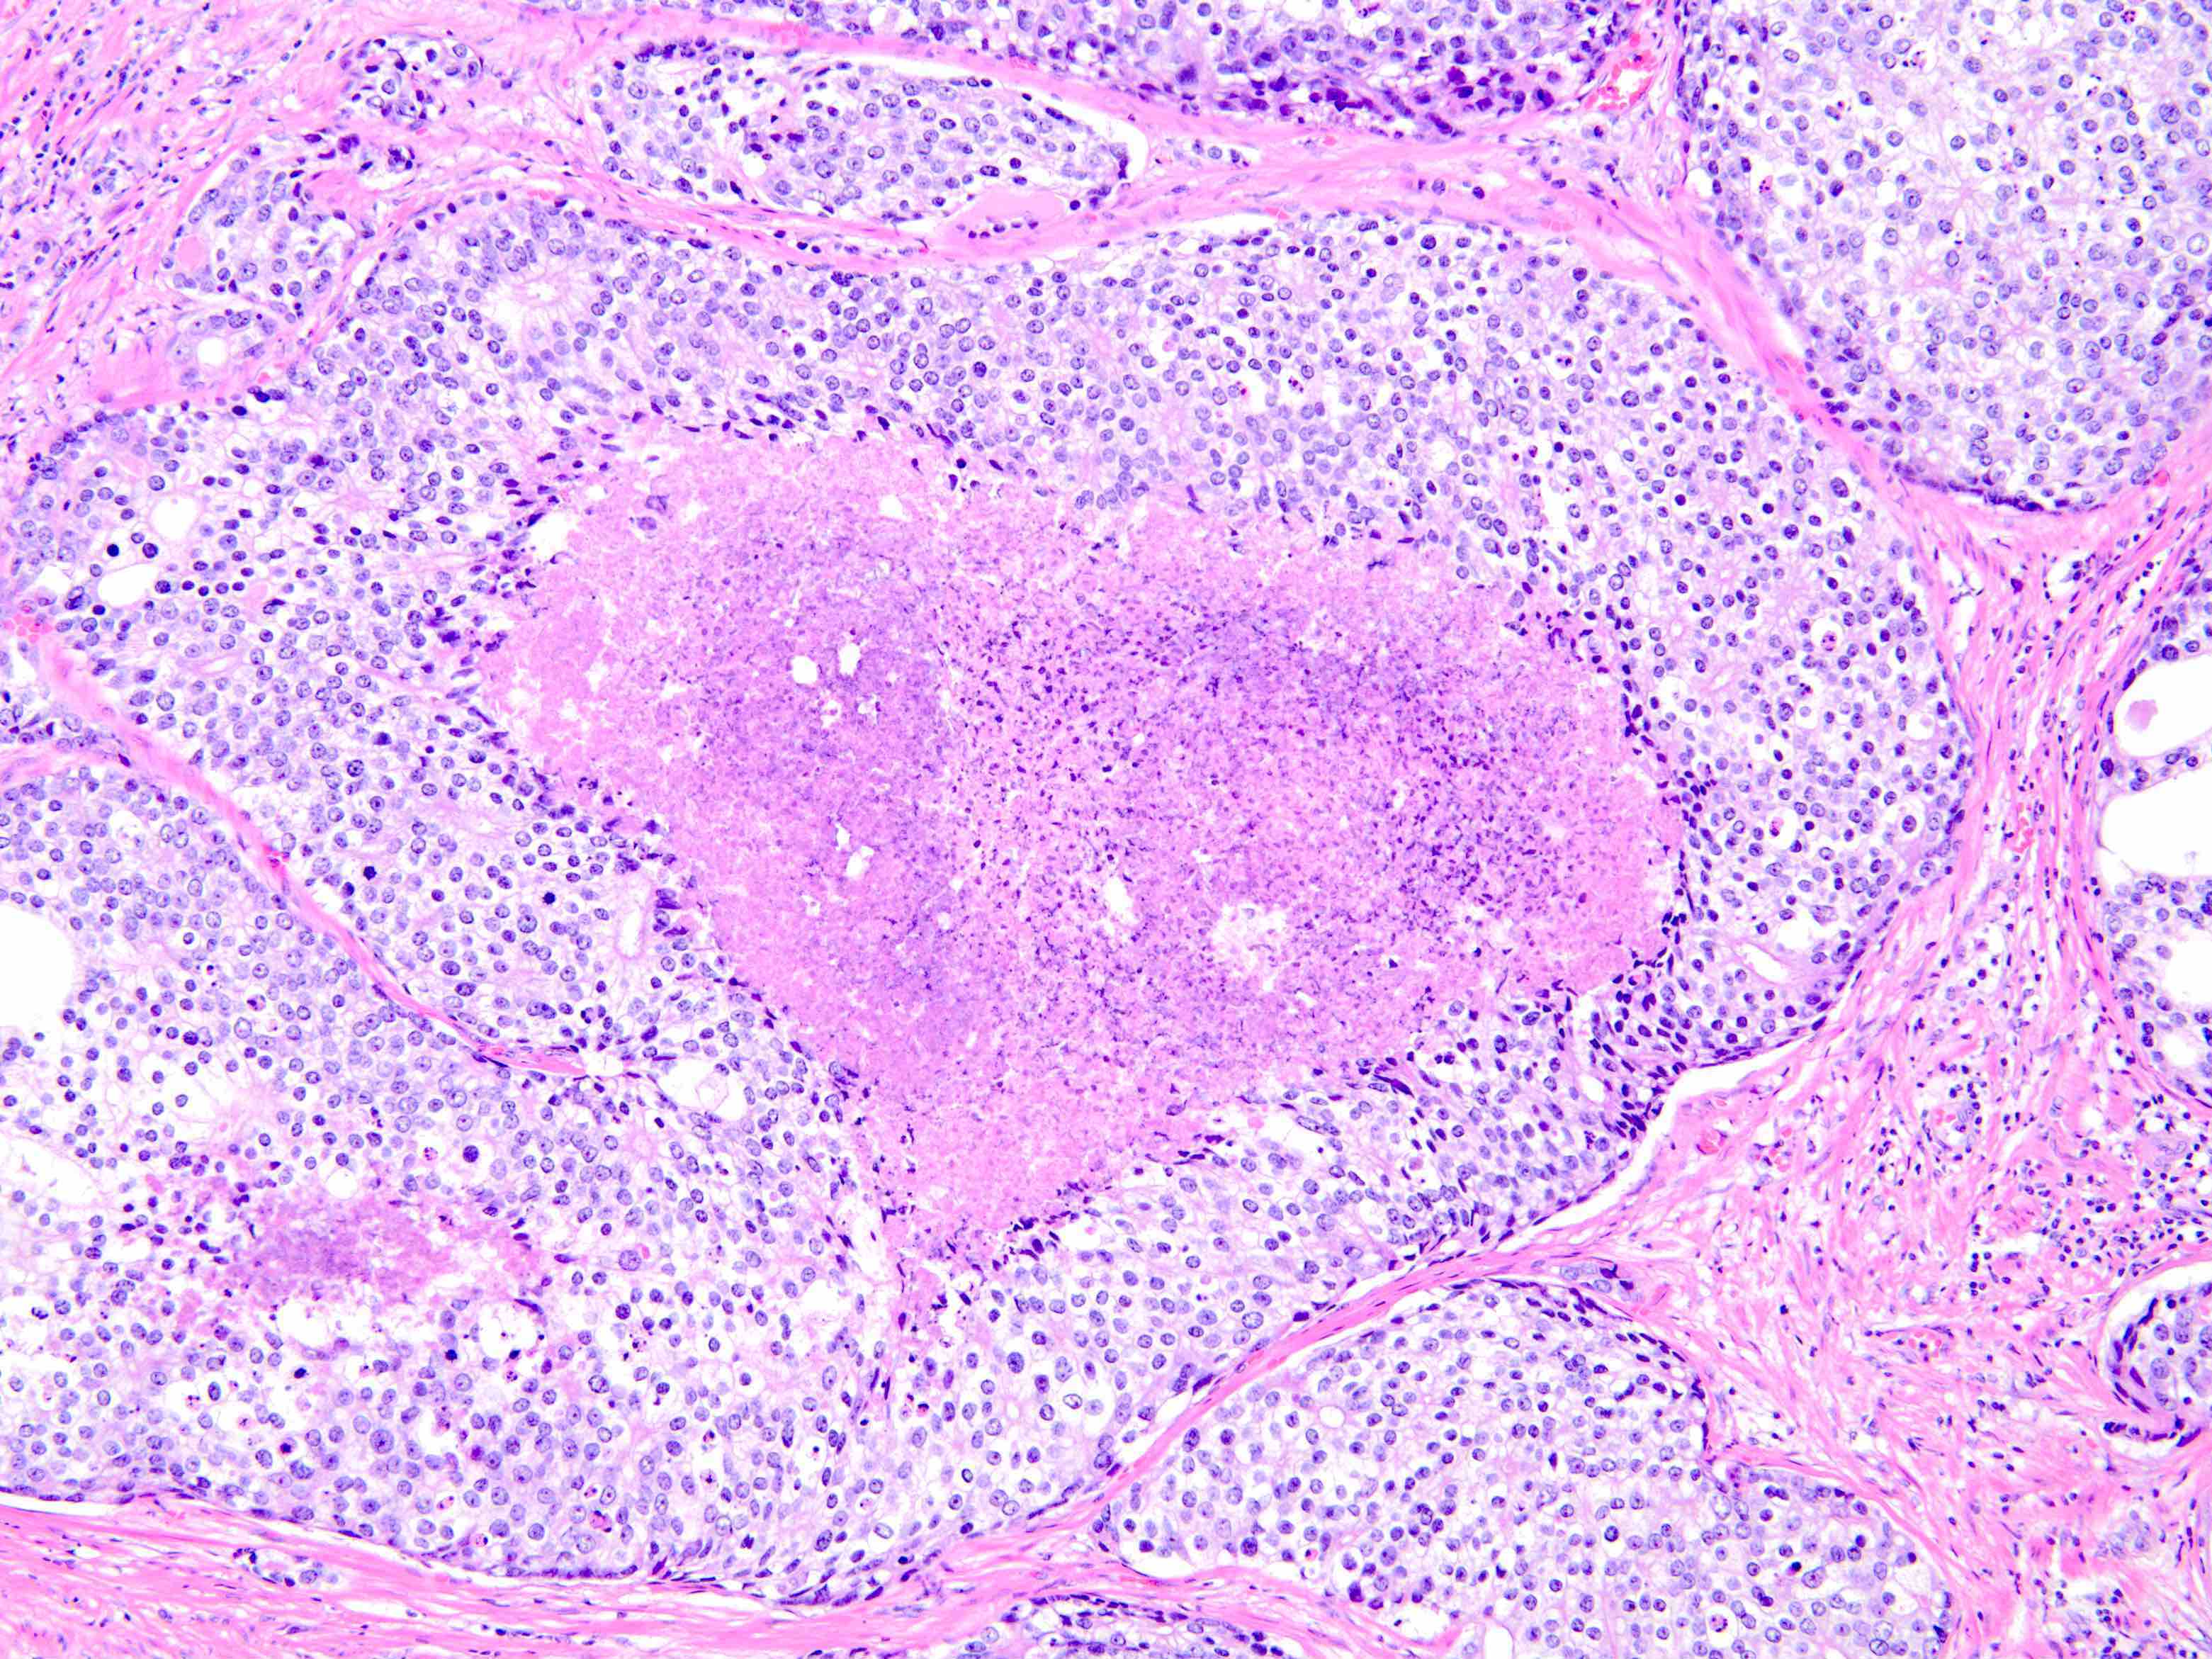 prostatic adenocarcinoma pathology outlines vállízület mozdulatlanság kezelése